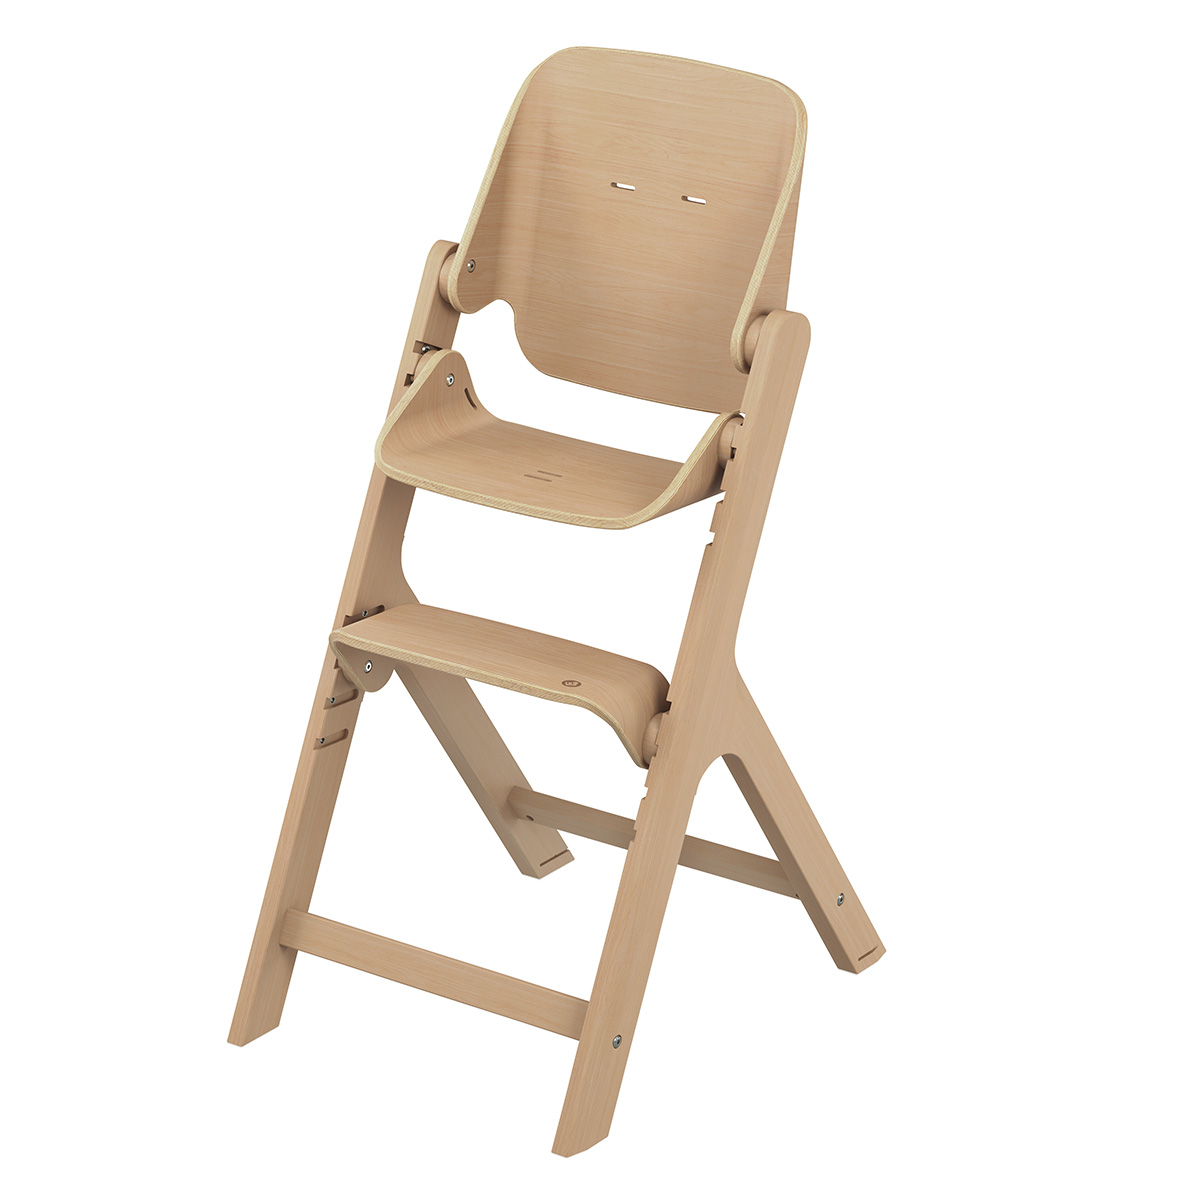 Chaise haute en bois